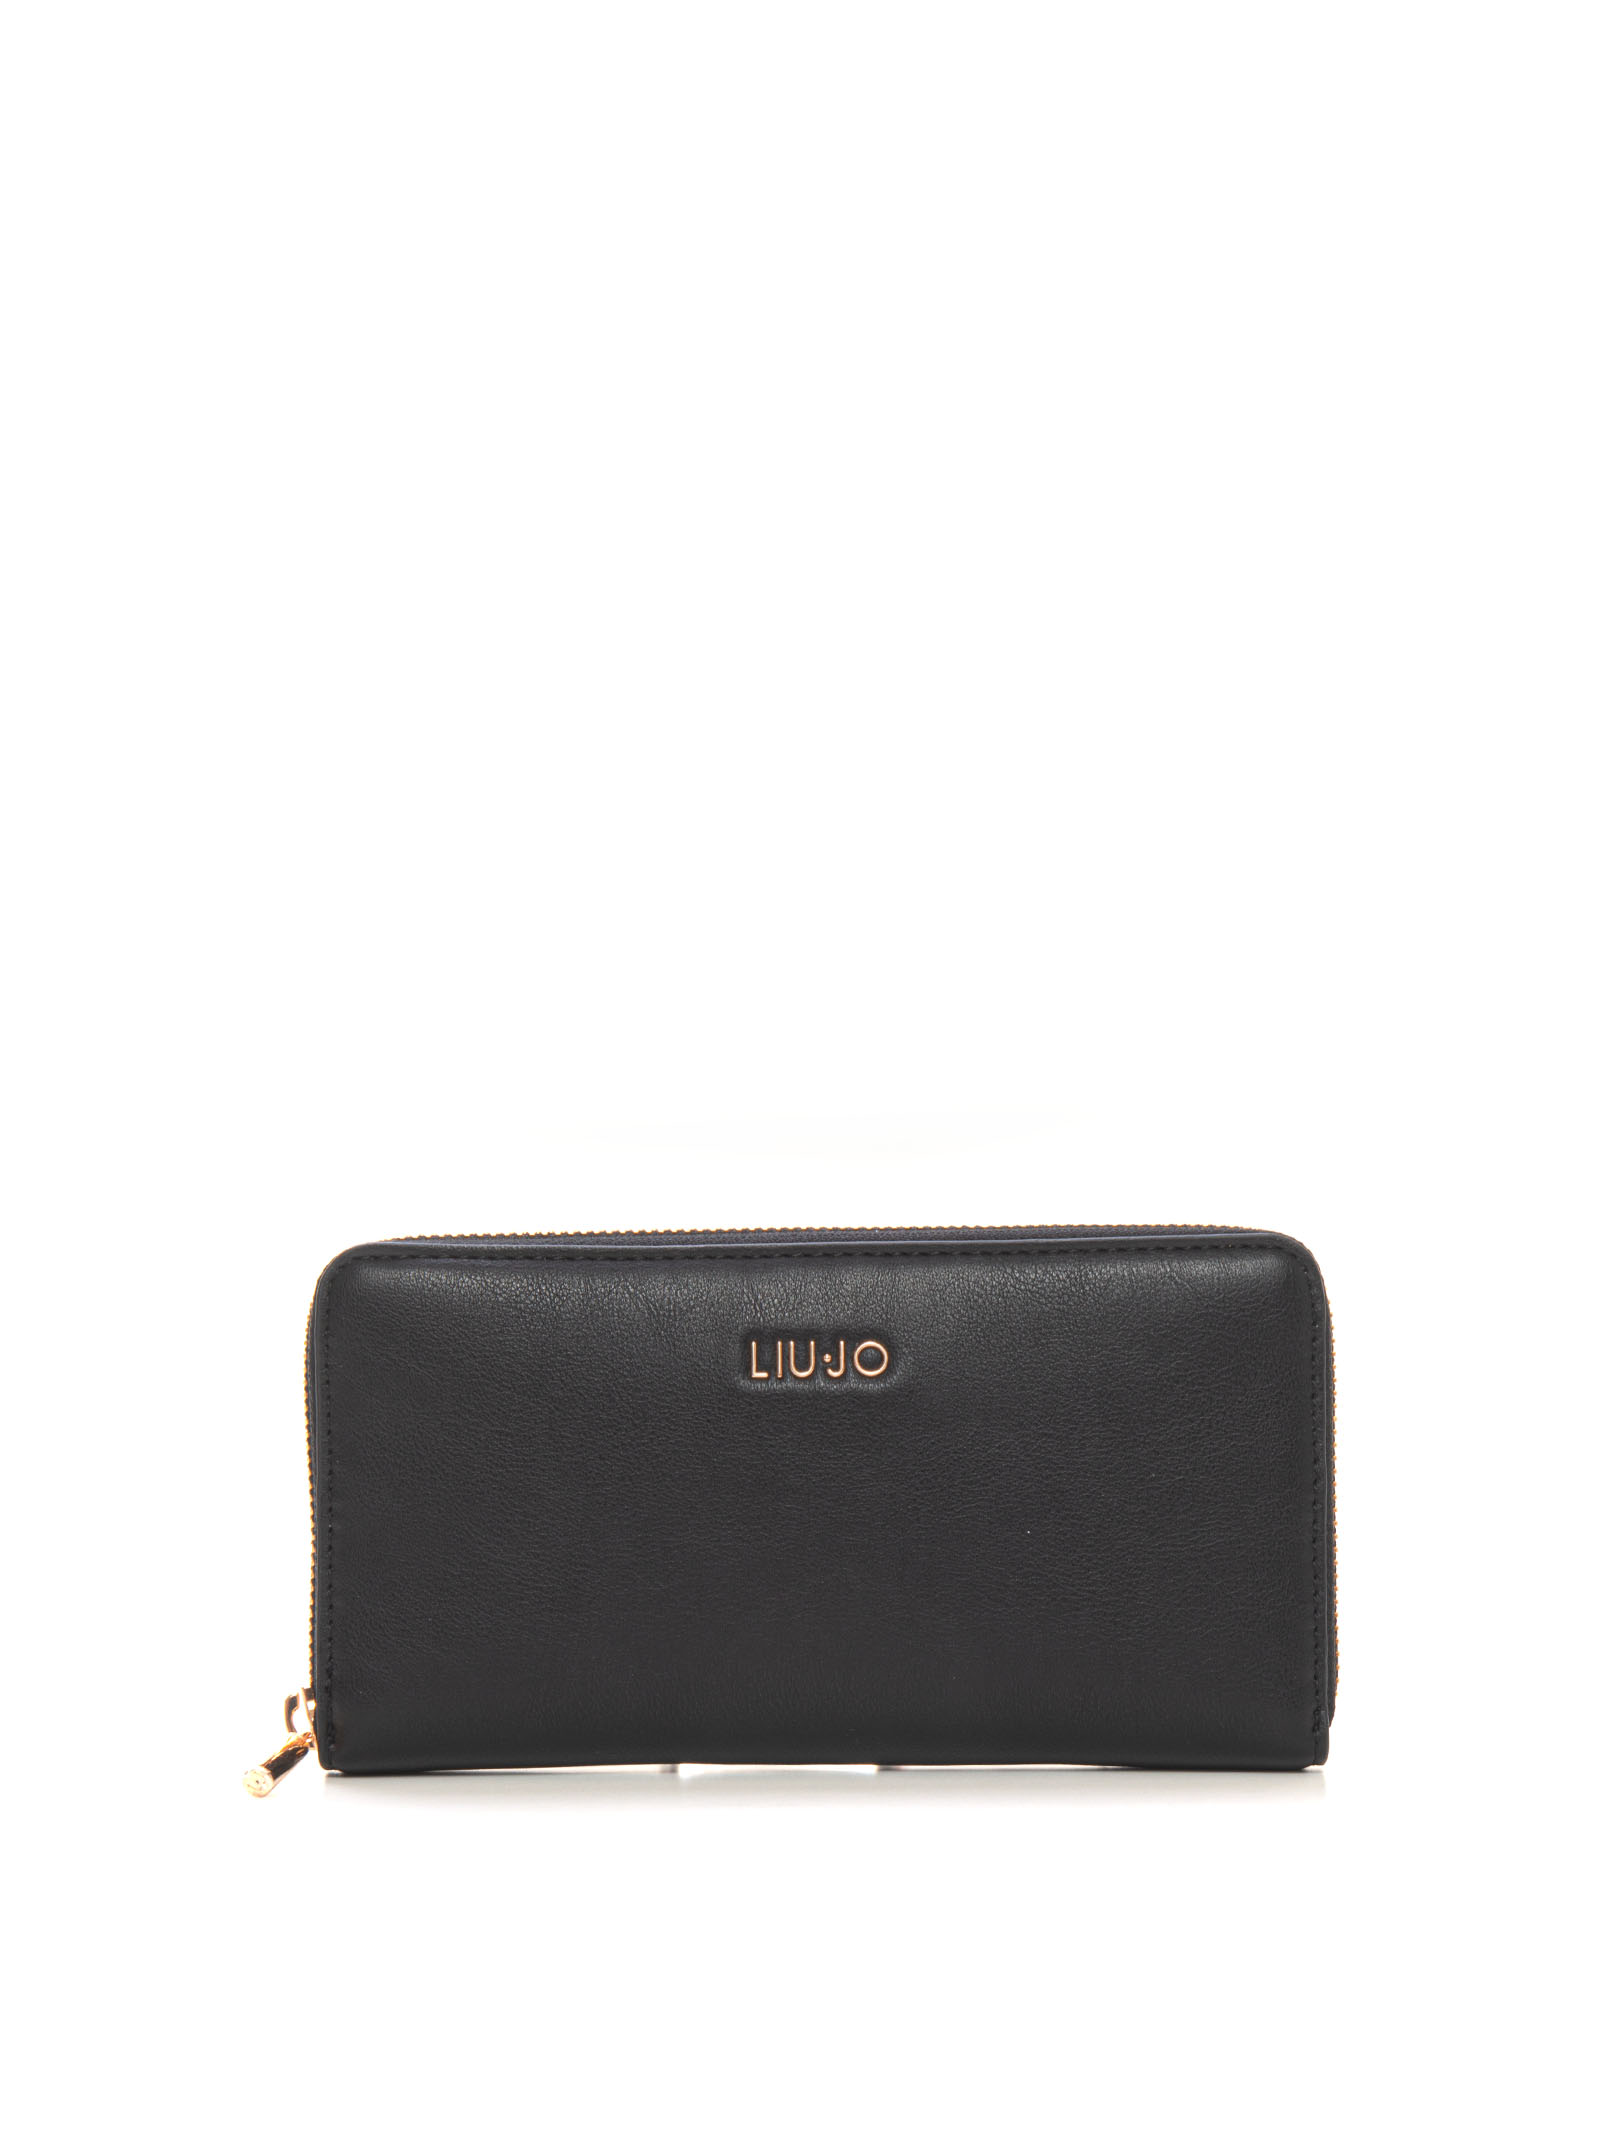 Liu •jo Wallet Big Size In Black